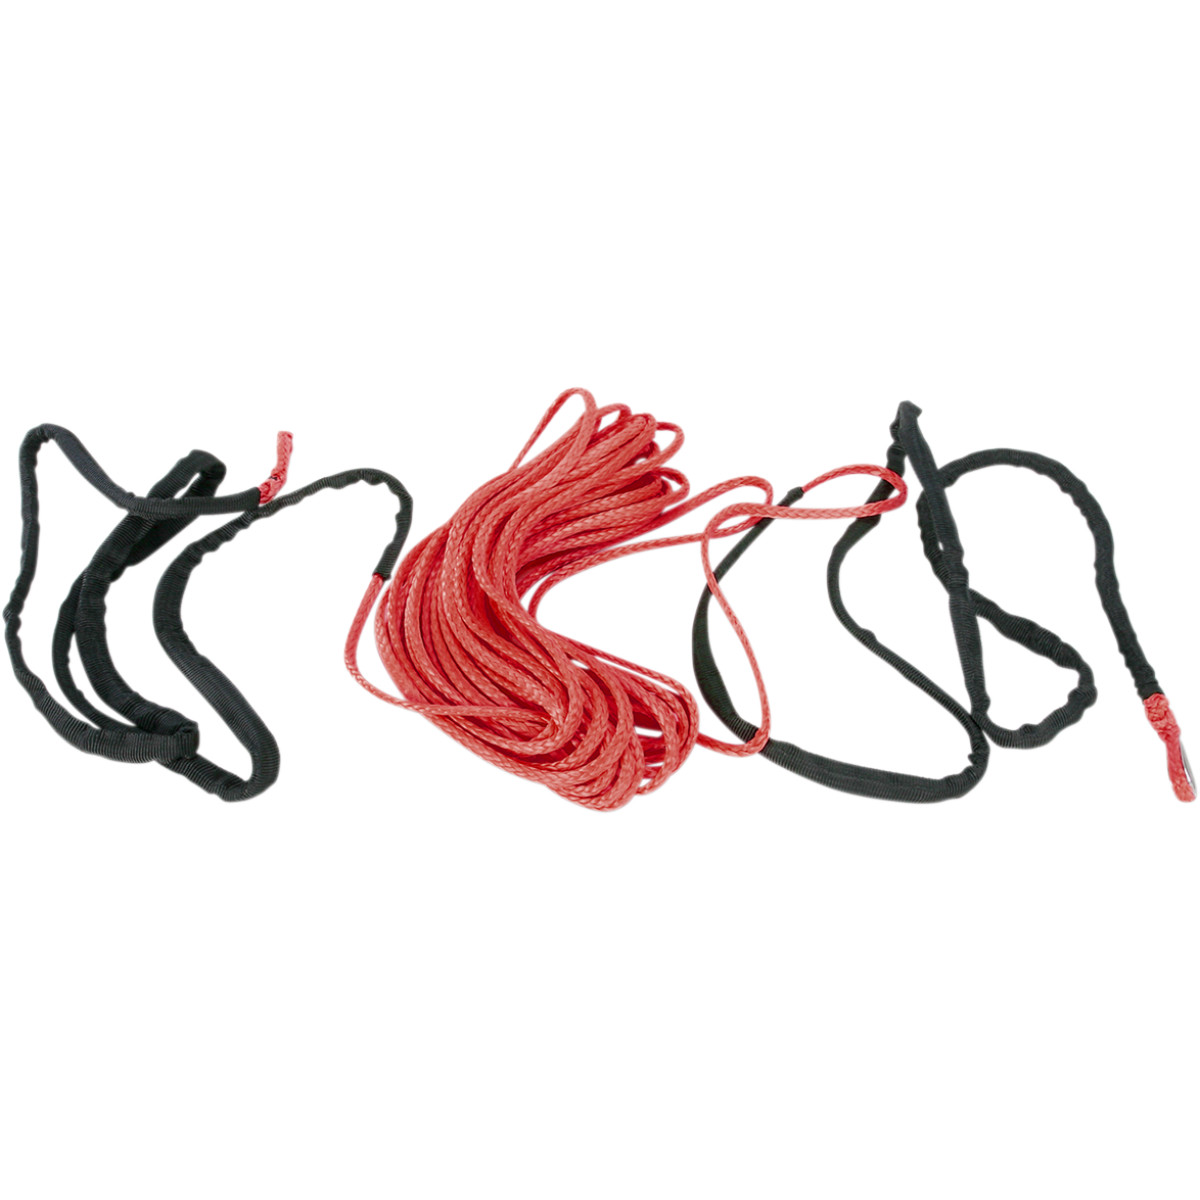 Syntetické lano Moose 5mm, 15,2m (červené)